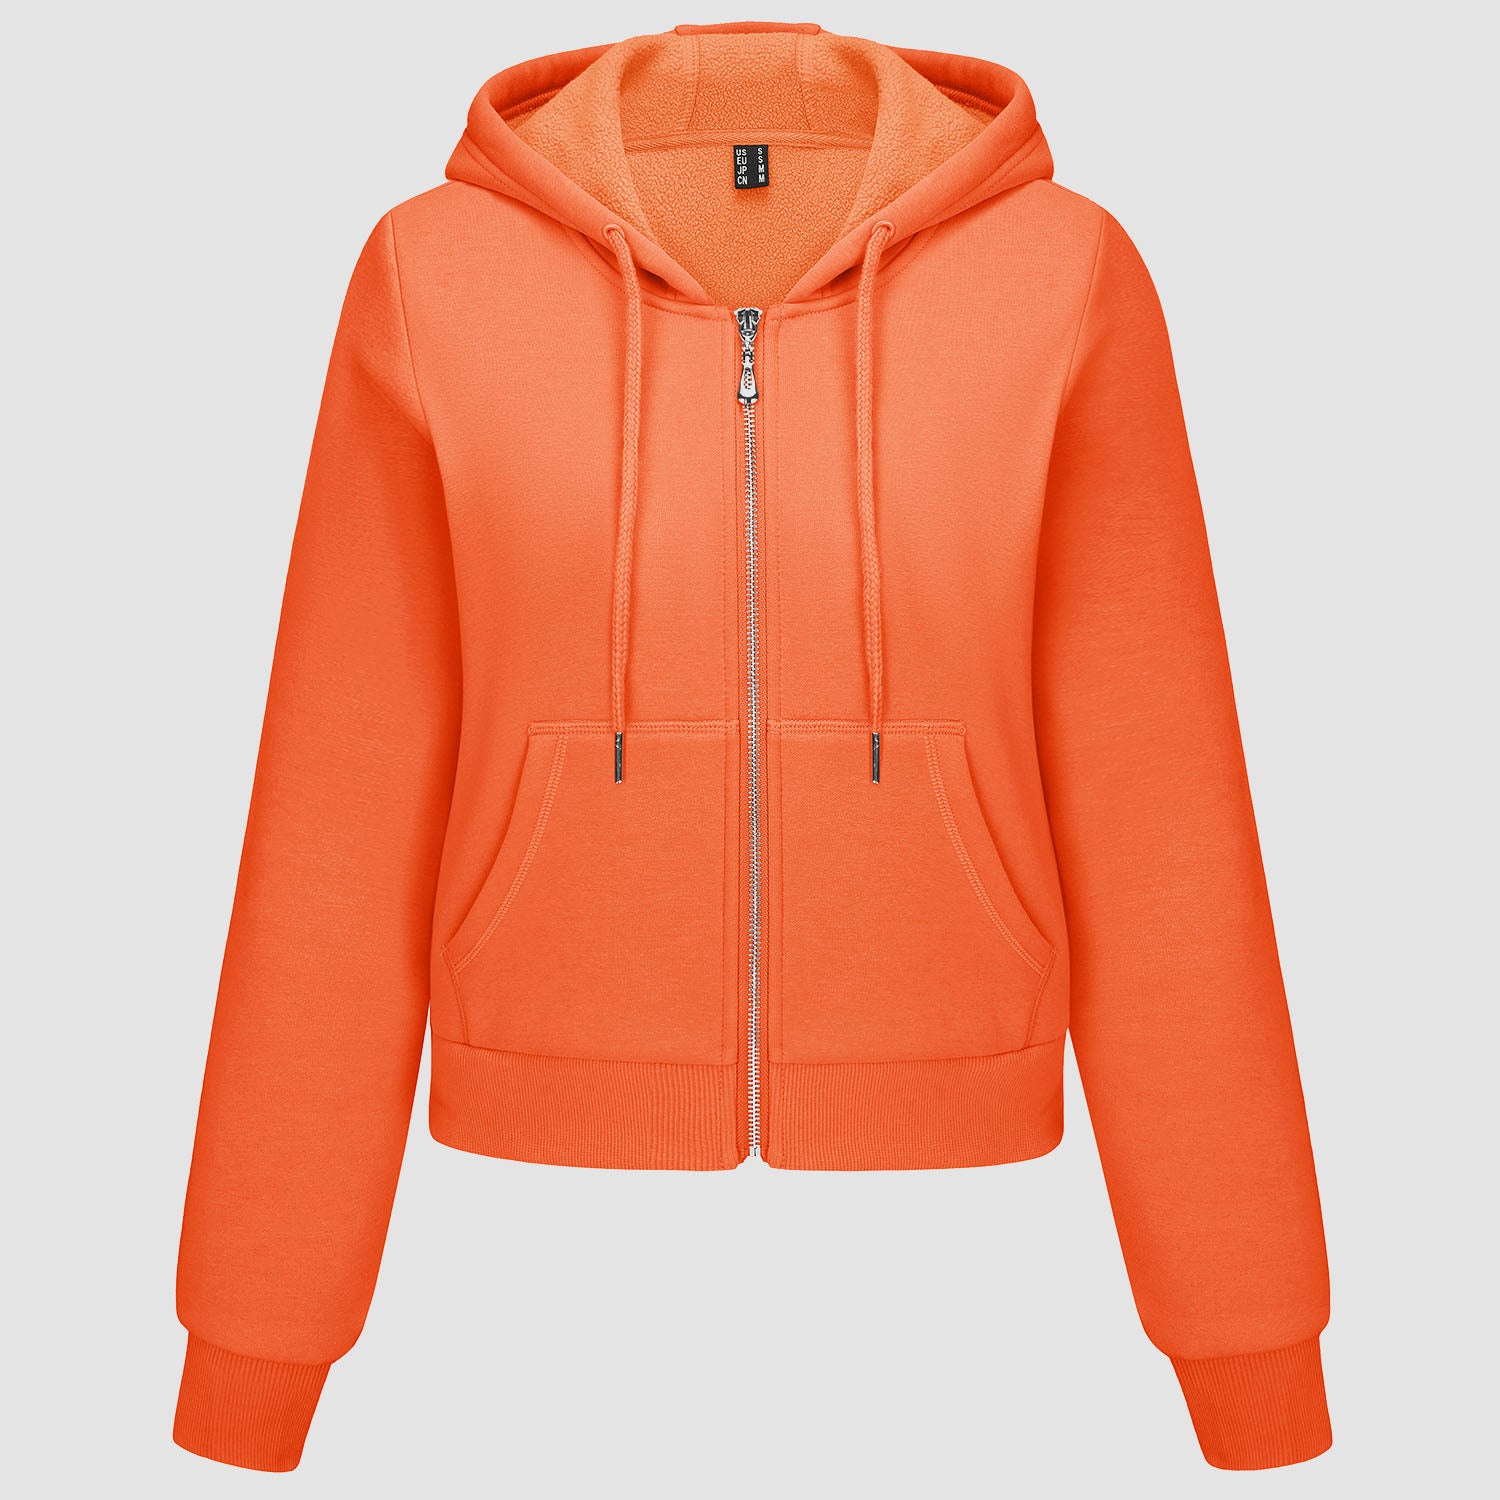 Women's Hoodie Jacket Fleece Lined Crop Tops Full Zip Hoodie For Winter